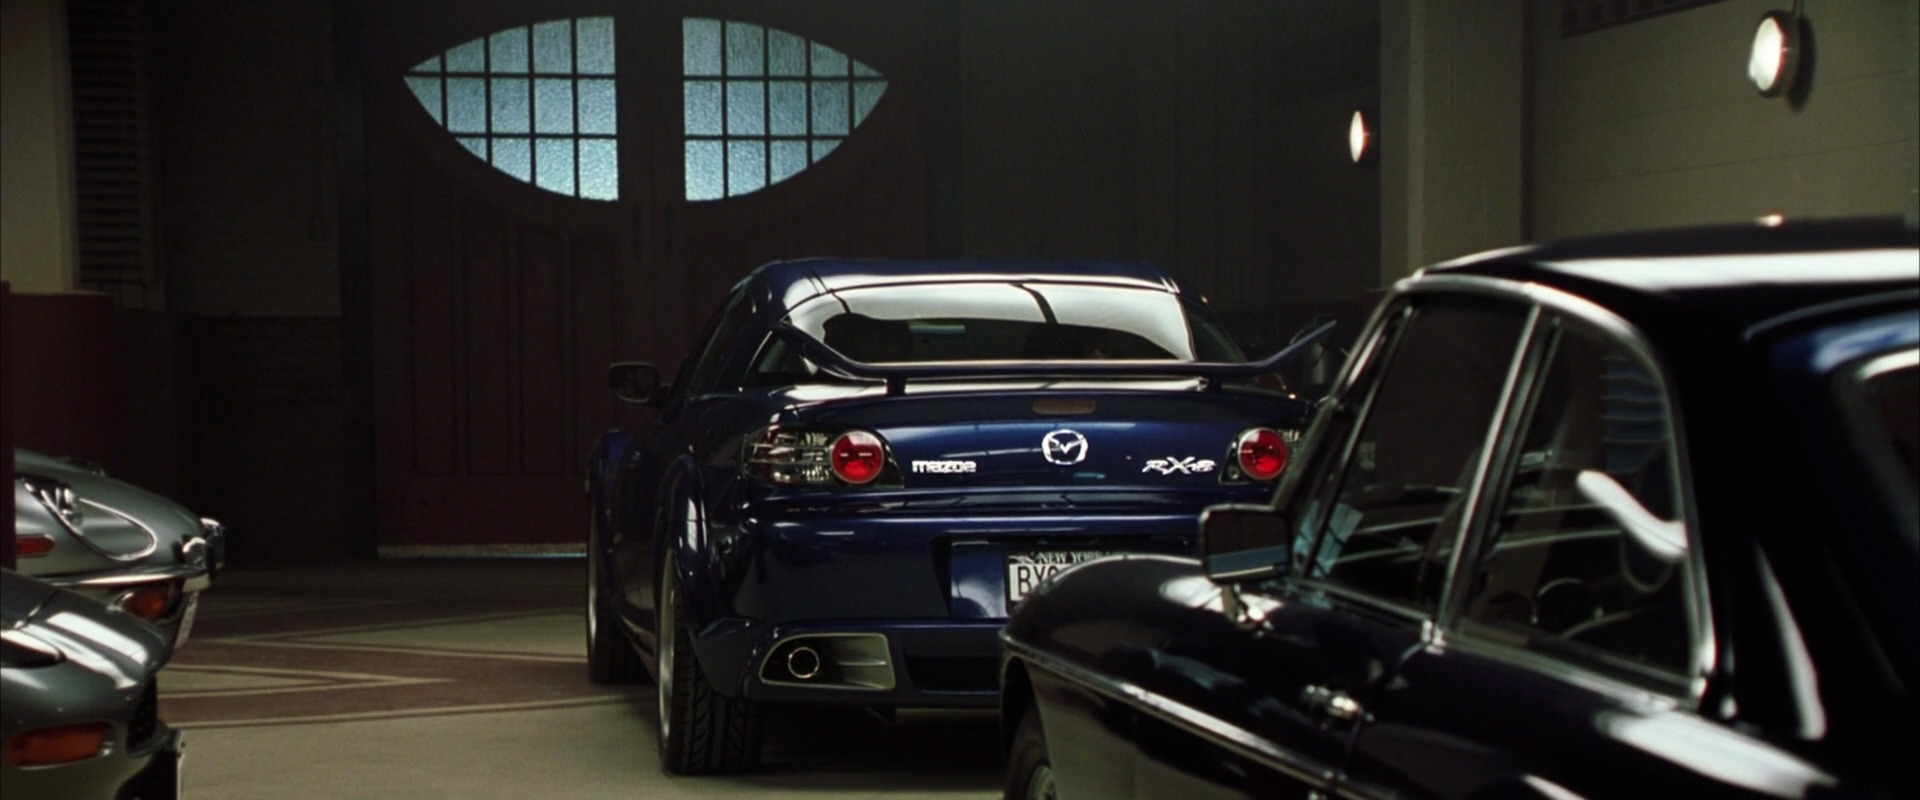 Икс машины 2. Mazda RX 8 X men. Три икса 2 машины.